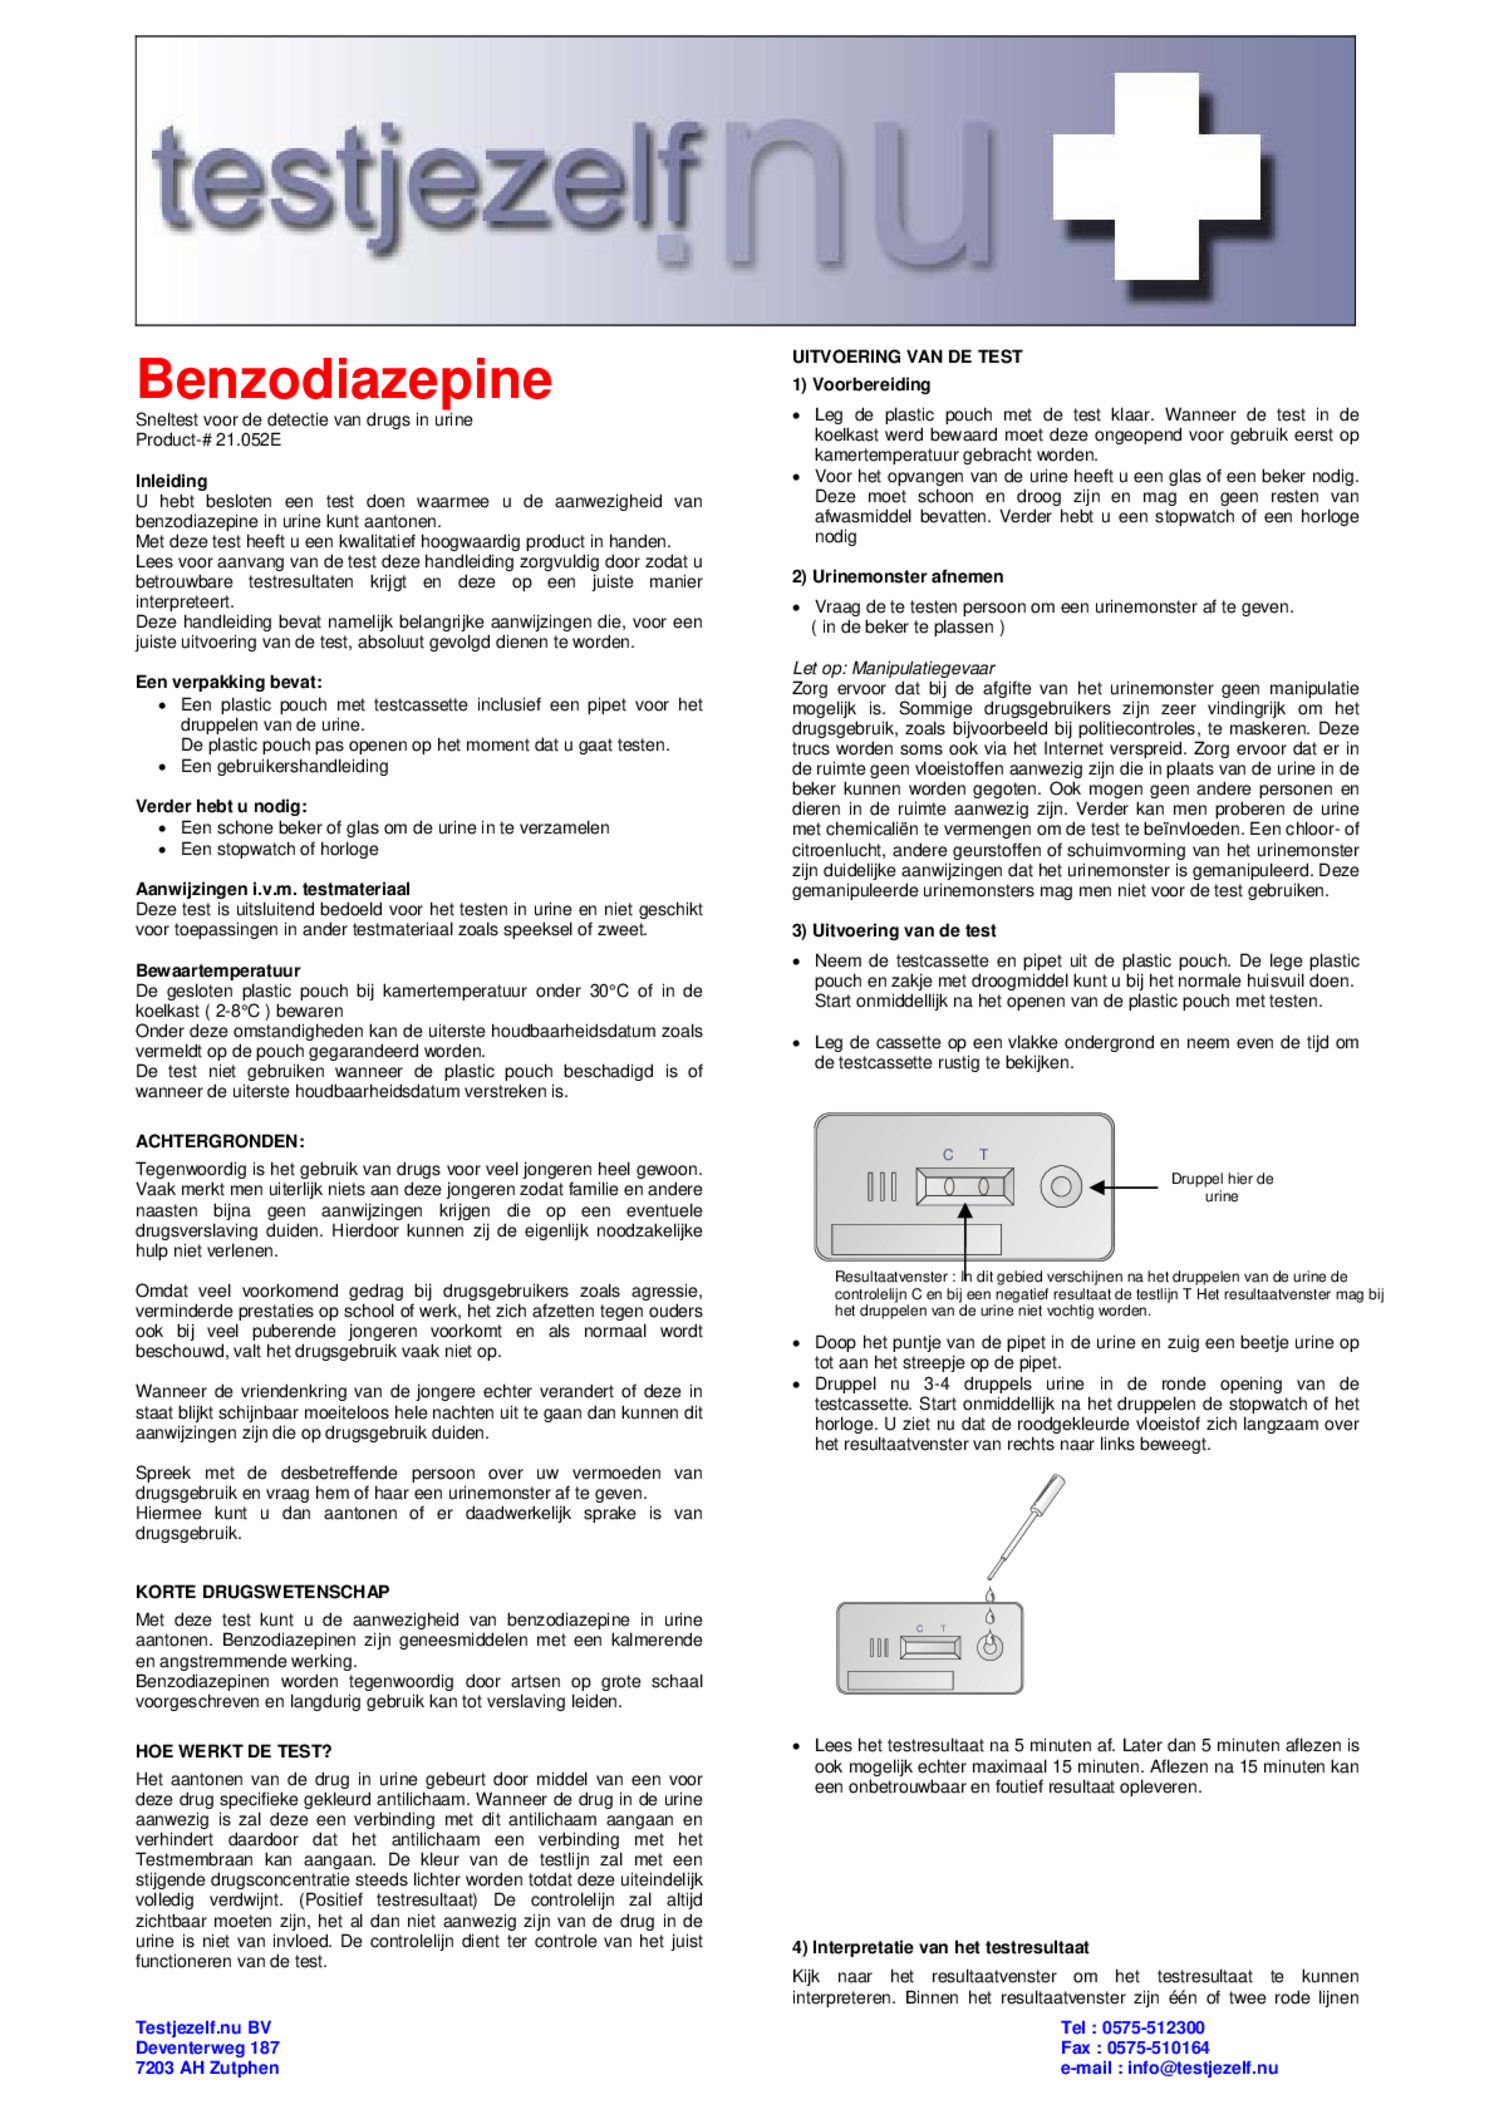 Testjezelf Drugtest Benzodiazepine afbeelding van document #1, gebruiksaanwijzing